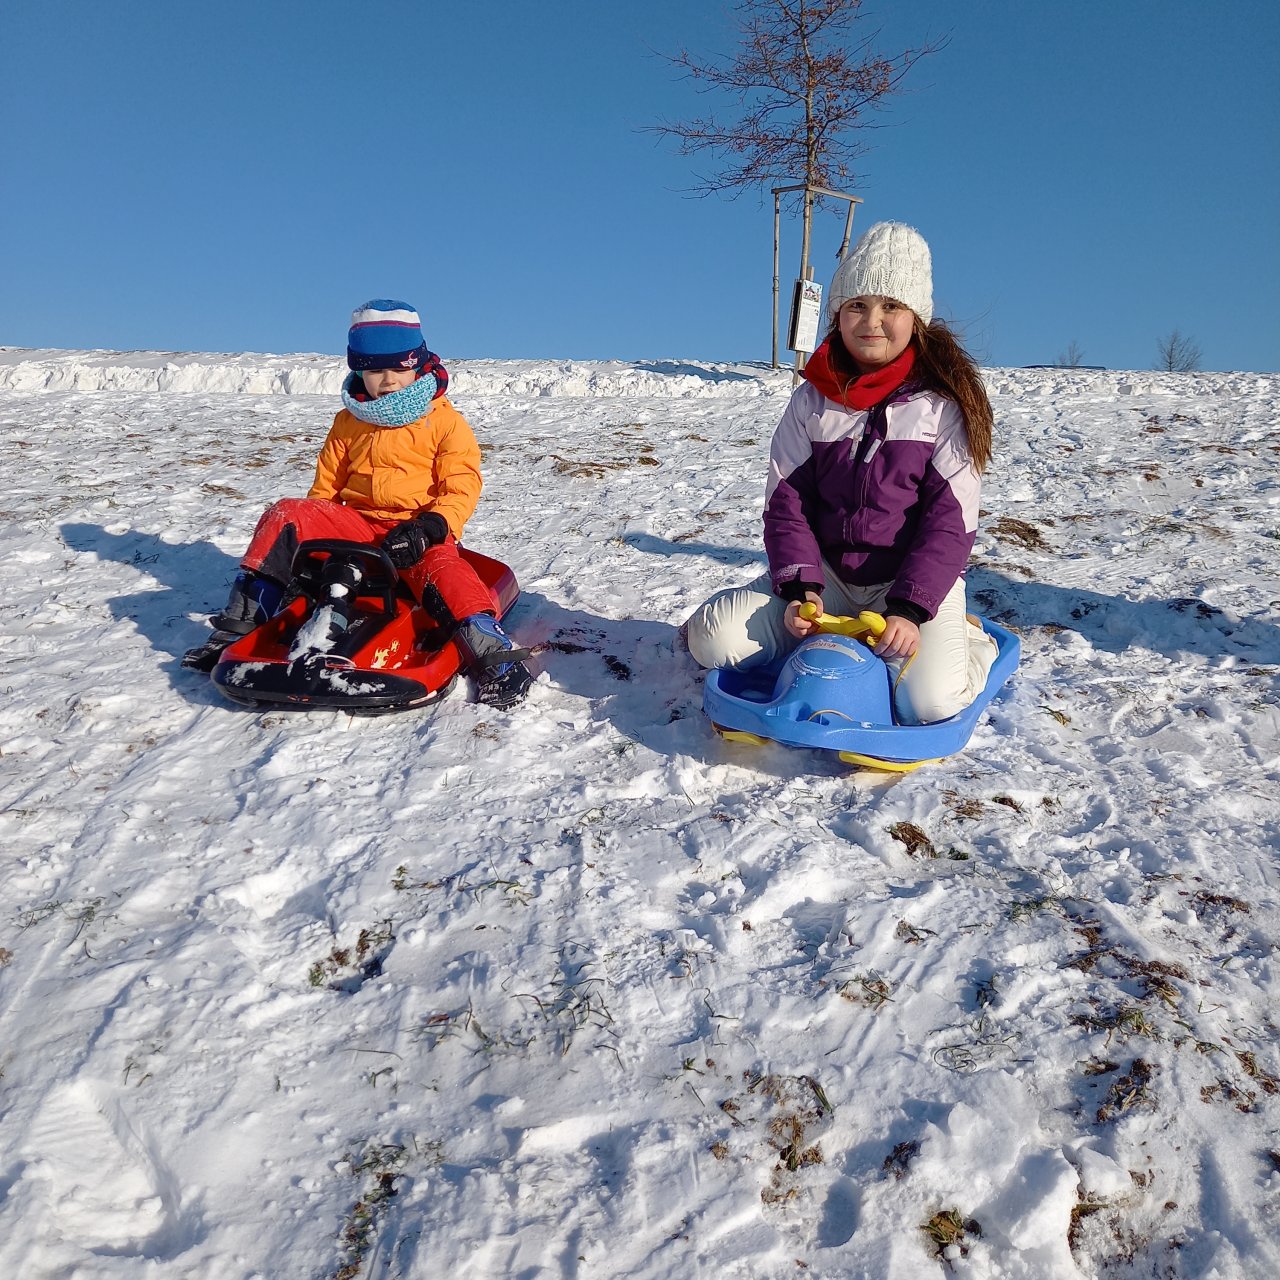 Zwei Kinder sind auf ihren Schlitten und fahren den Berg hinunterbei strahlend blauem Himmel.